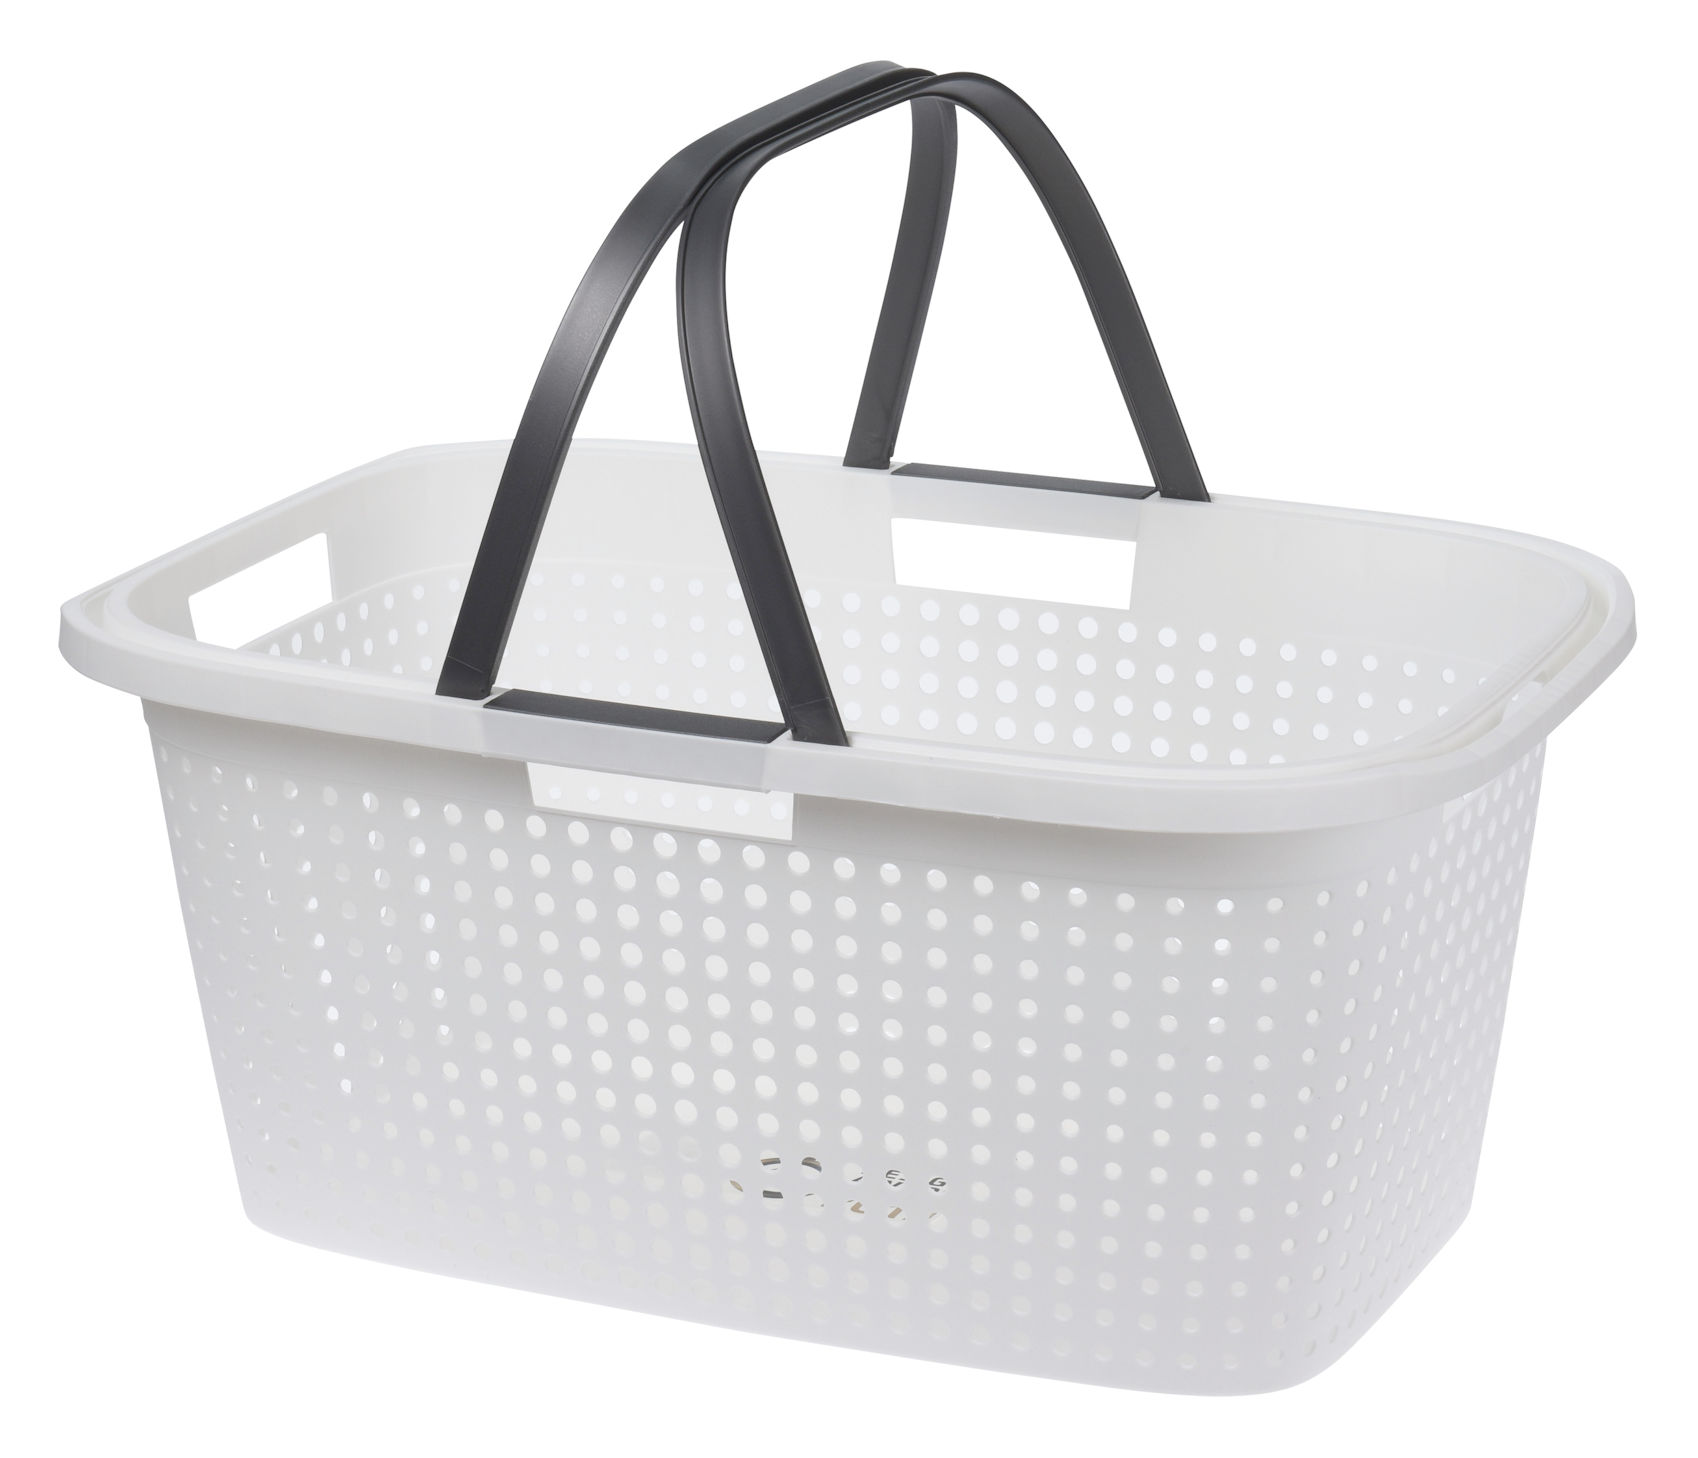 XL Wäschekorb aus Kunststoff 66 x 39 cm - weiß oder schwarz - Tragekorb mit klappbaren Griffen